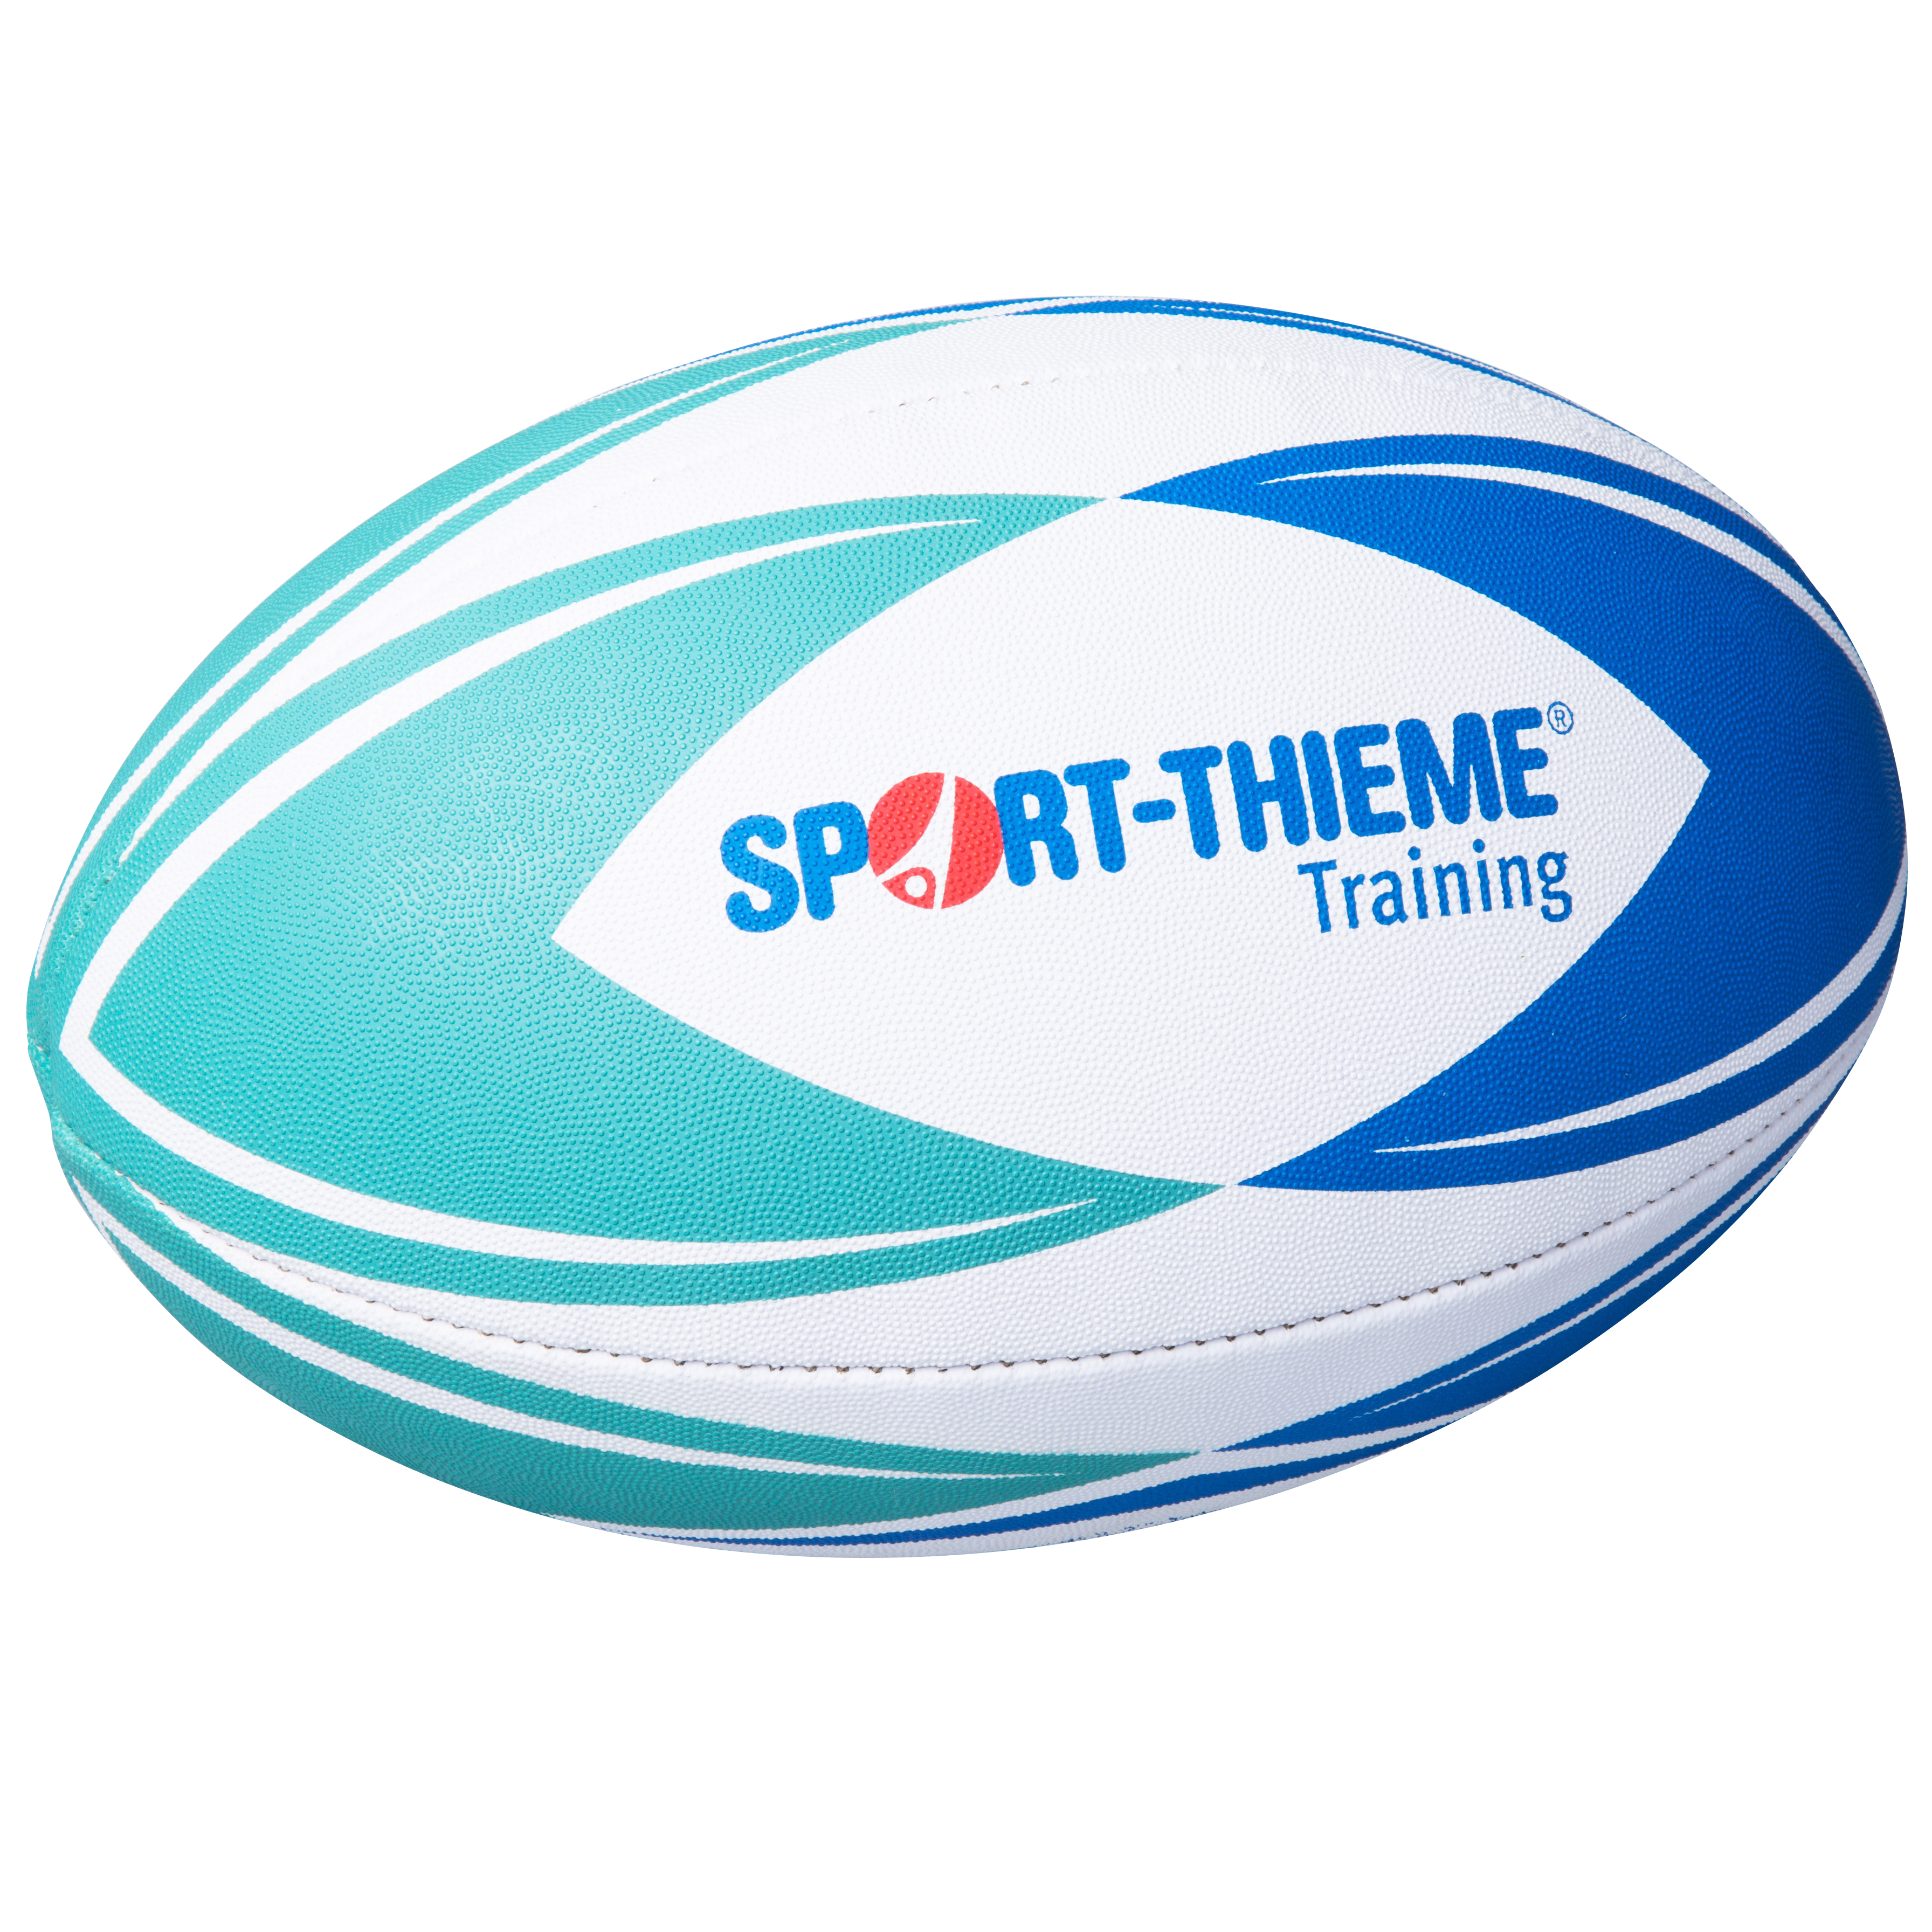 Sport-Thieme Rugbybal "Training" kopen bij